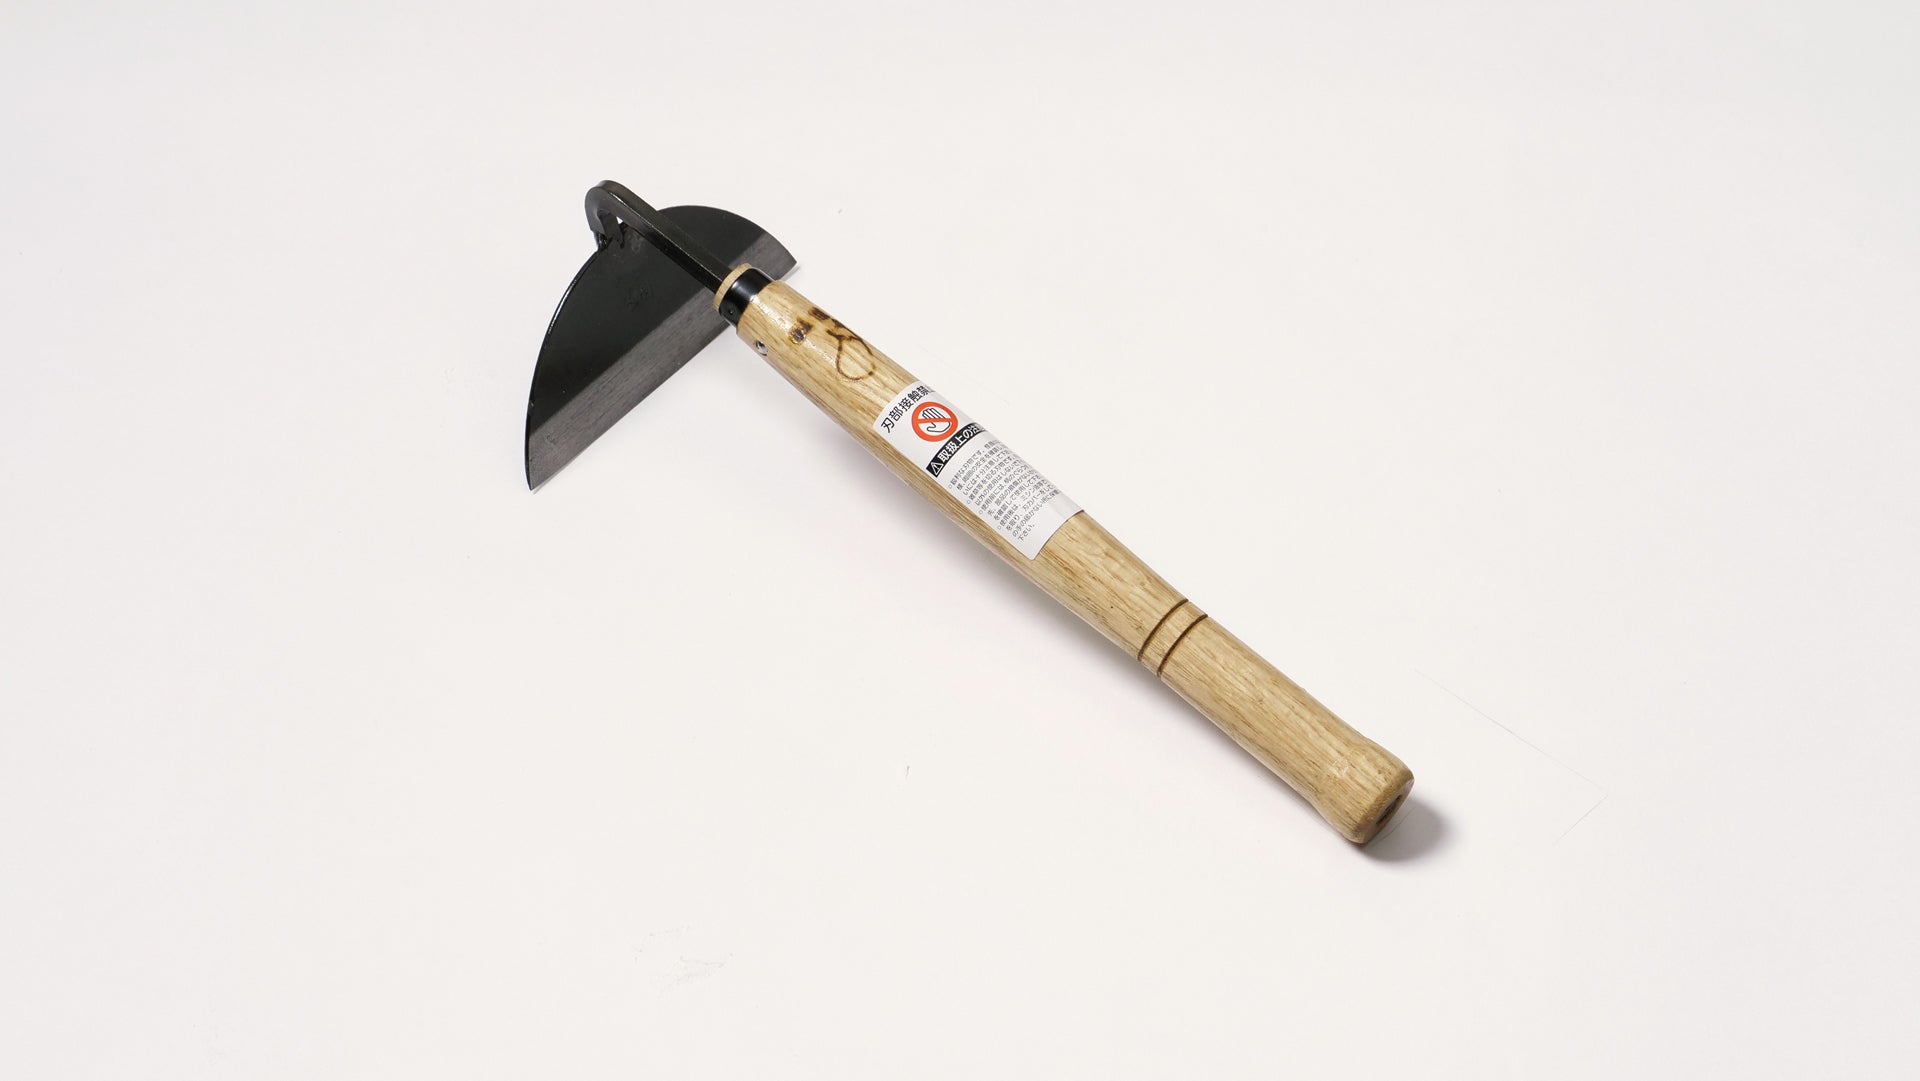 Nasu Flat Scraper (One-Handed Cut Grass Cutter) - Japanese Gardening Tools